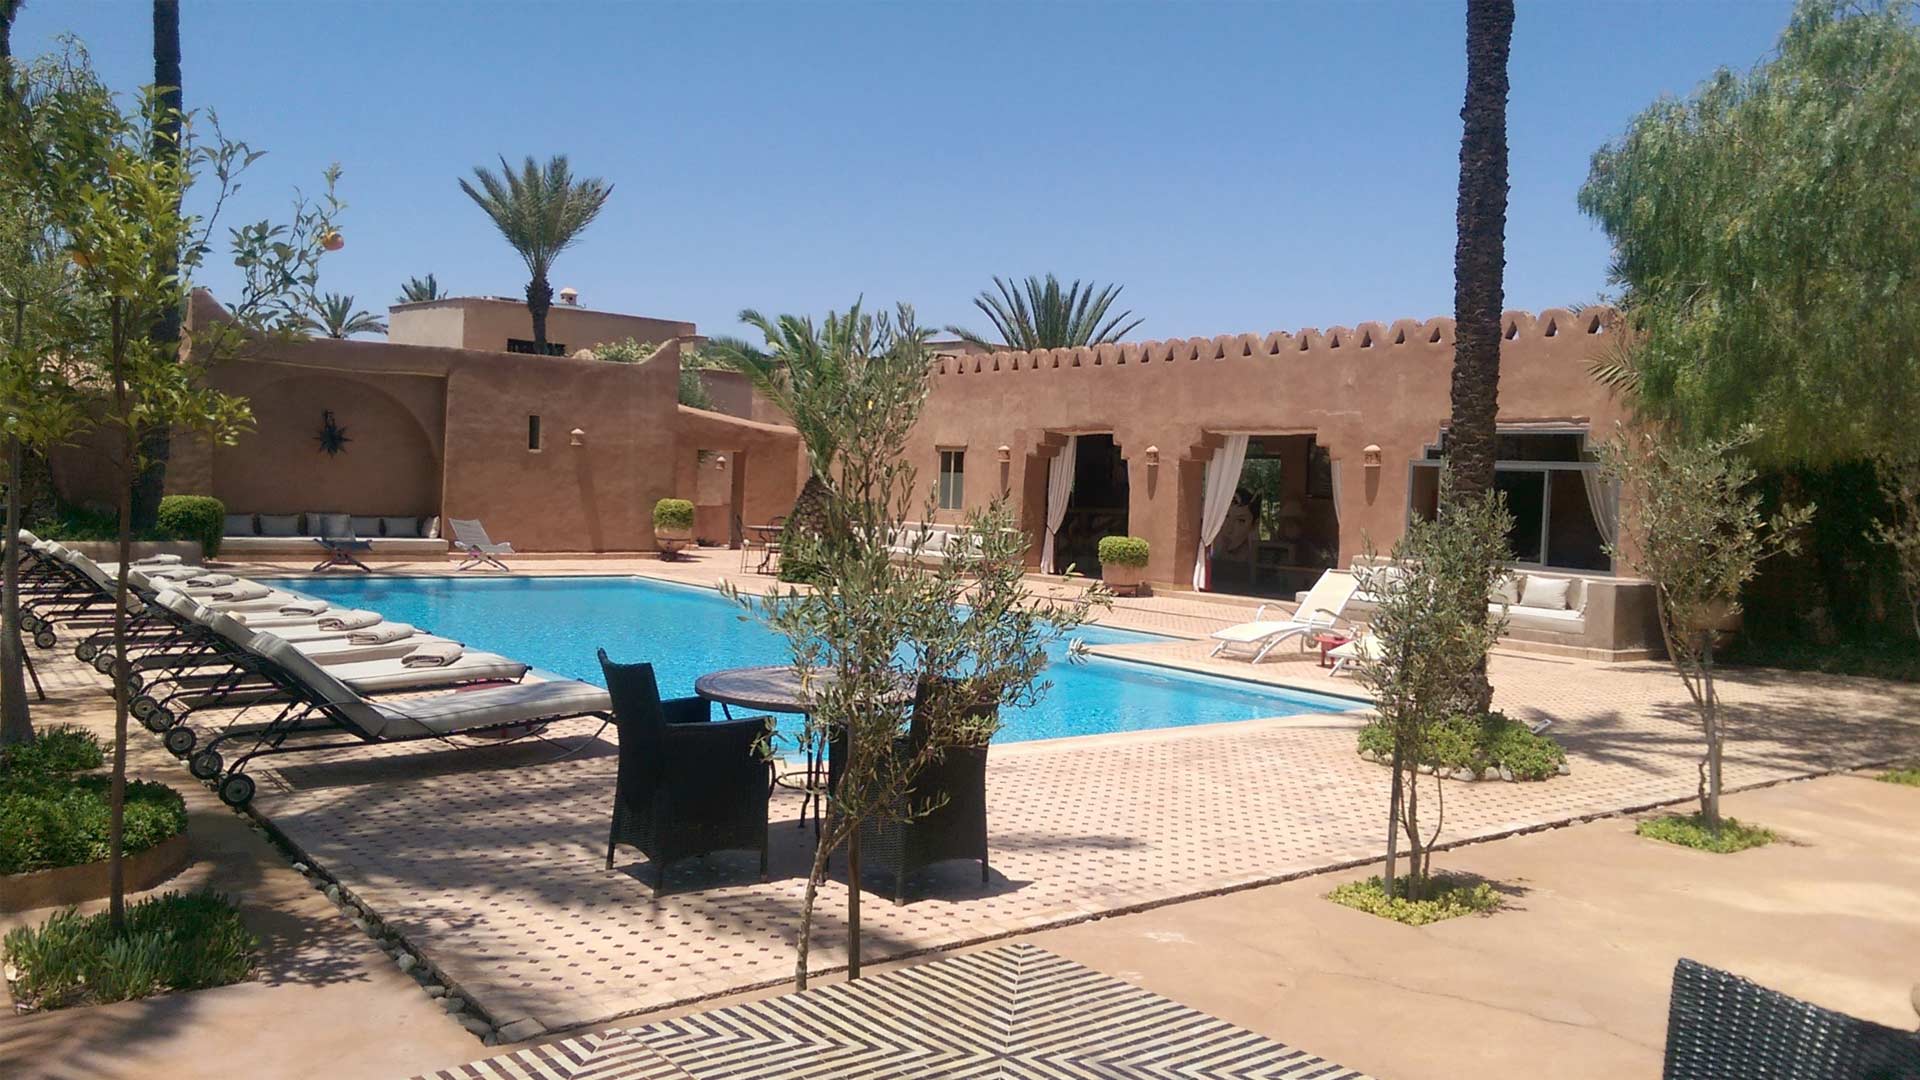 Villa Villa 33, Affitto a Marrakech